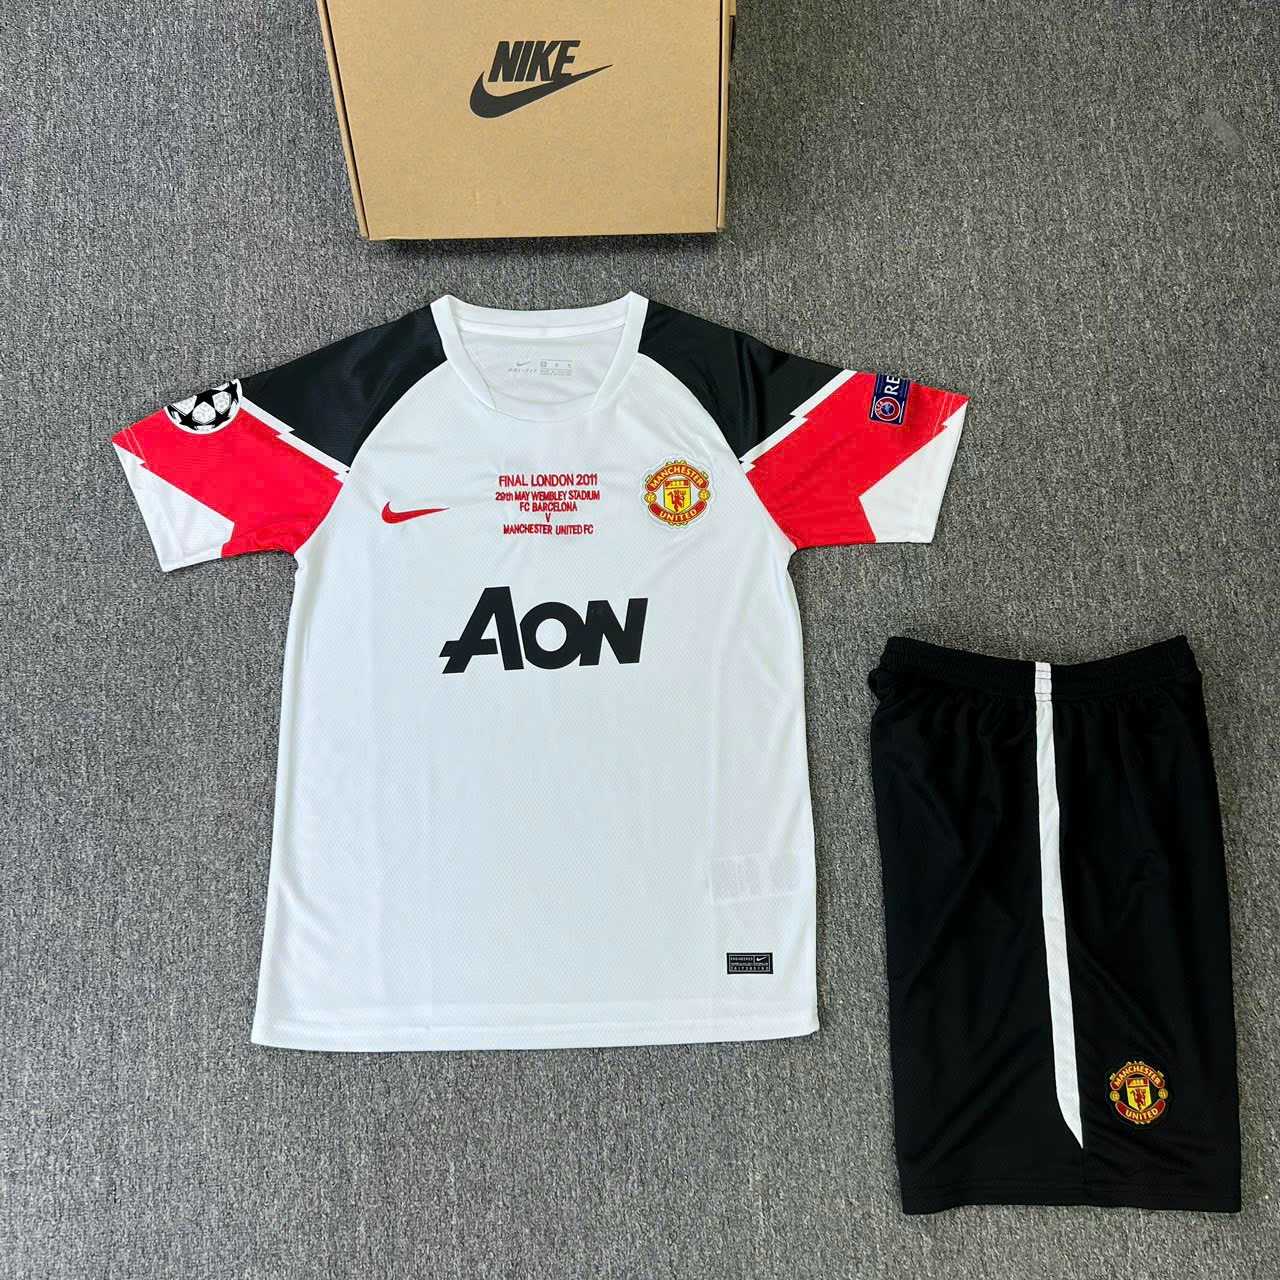 Bộ quần áo bóng đá manchester united MU AON 2011 vải SPF mè caro thái trắng đỏ logo thêu 1